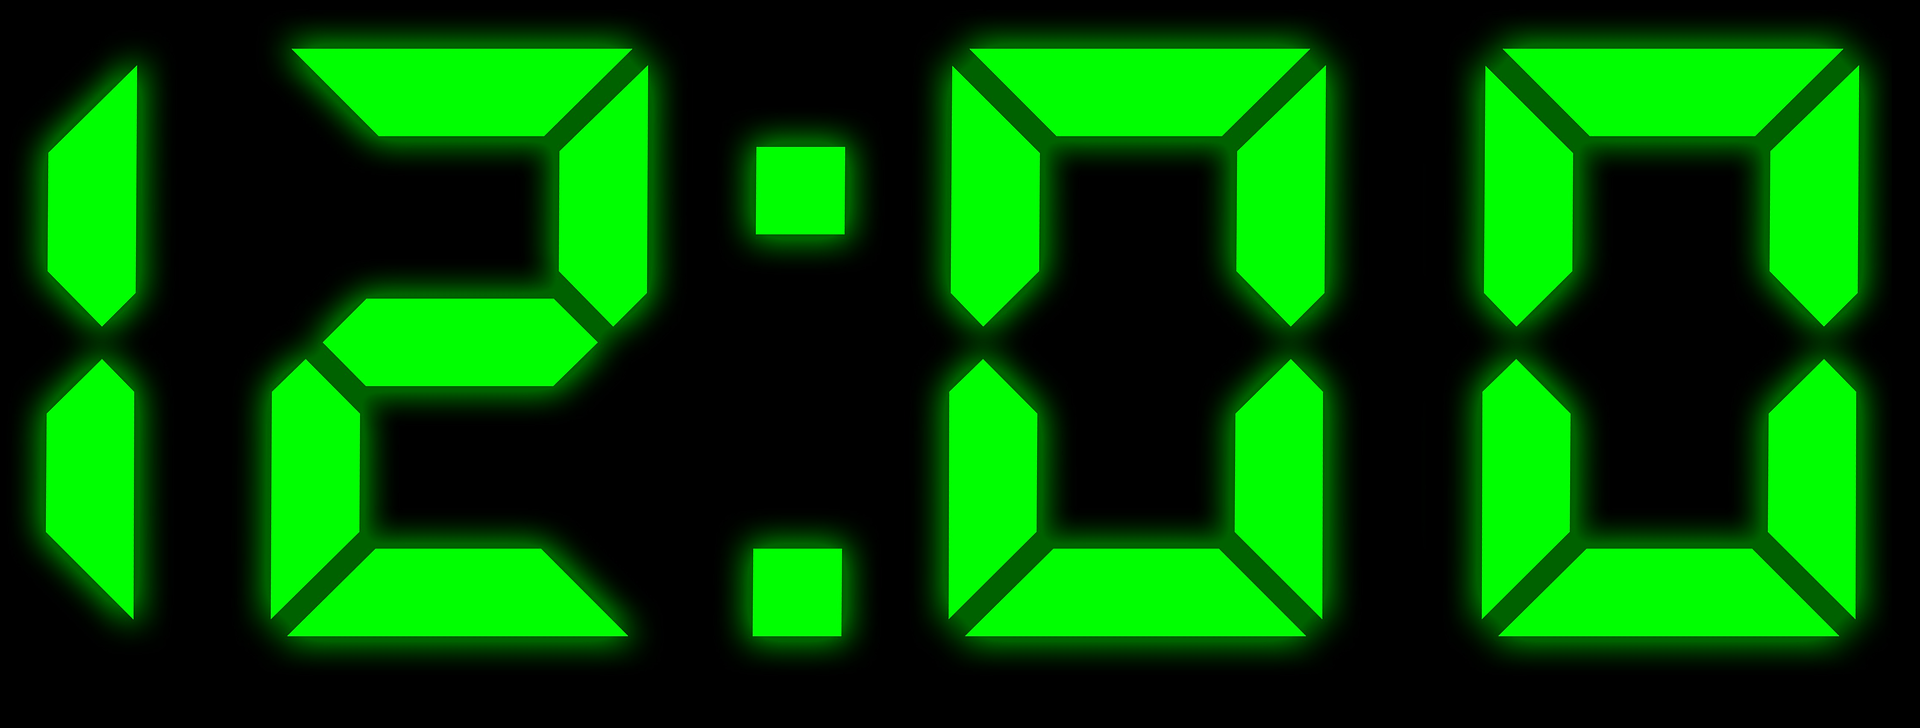 22 0.14. Цифры электронных часов. Электронные часы зеленые. Часы цифровые зеленые. Электронные часы 12 00.